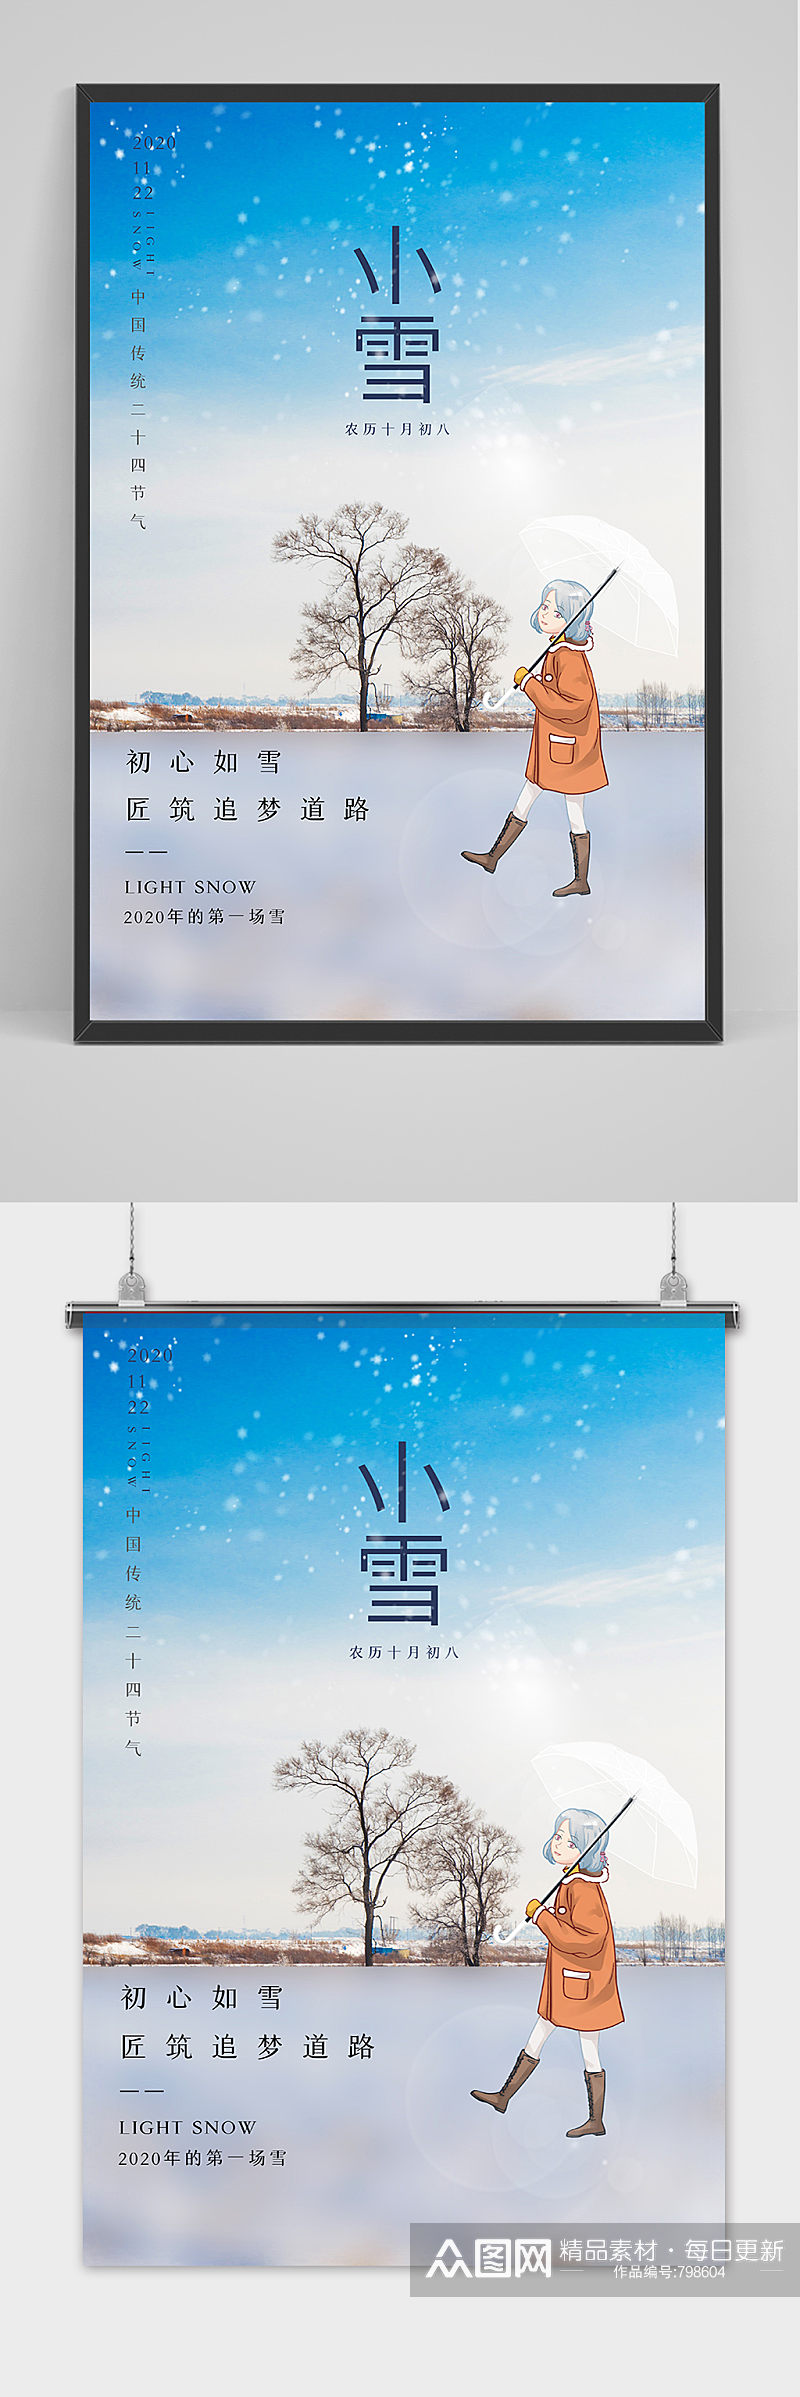 创意小雪宣传海报模板设计素材